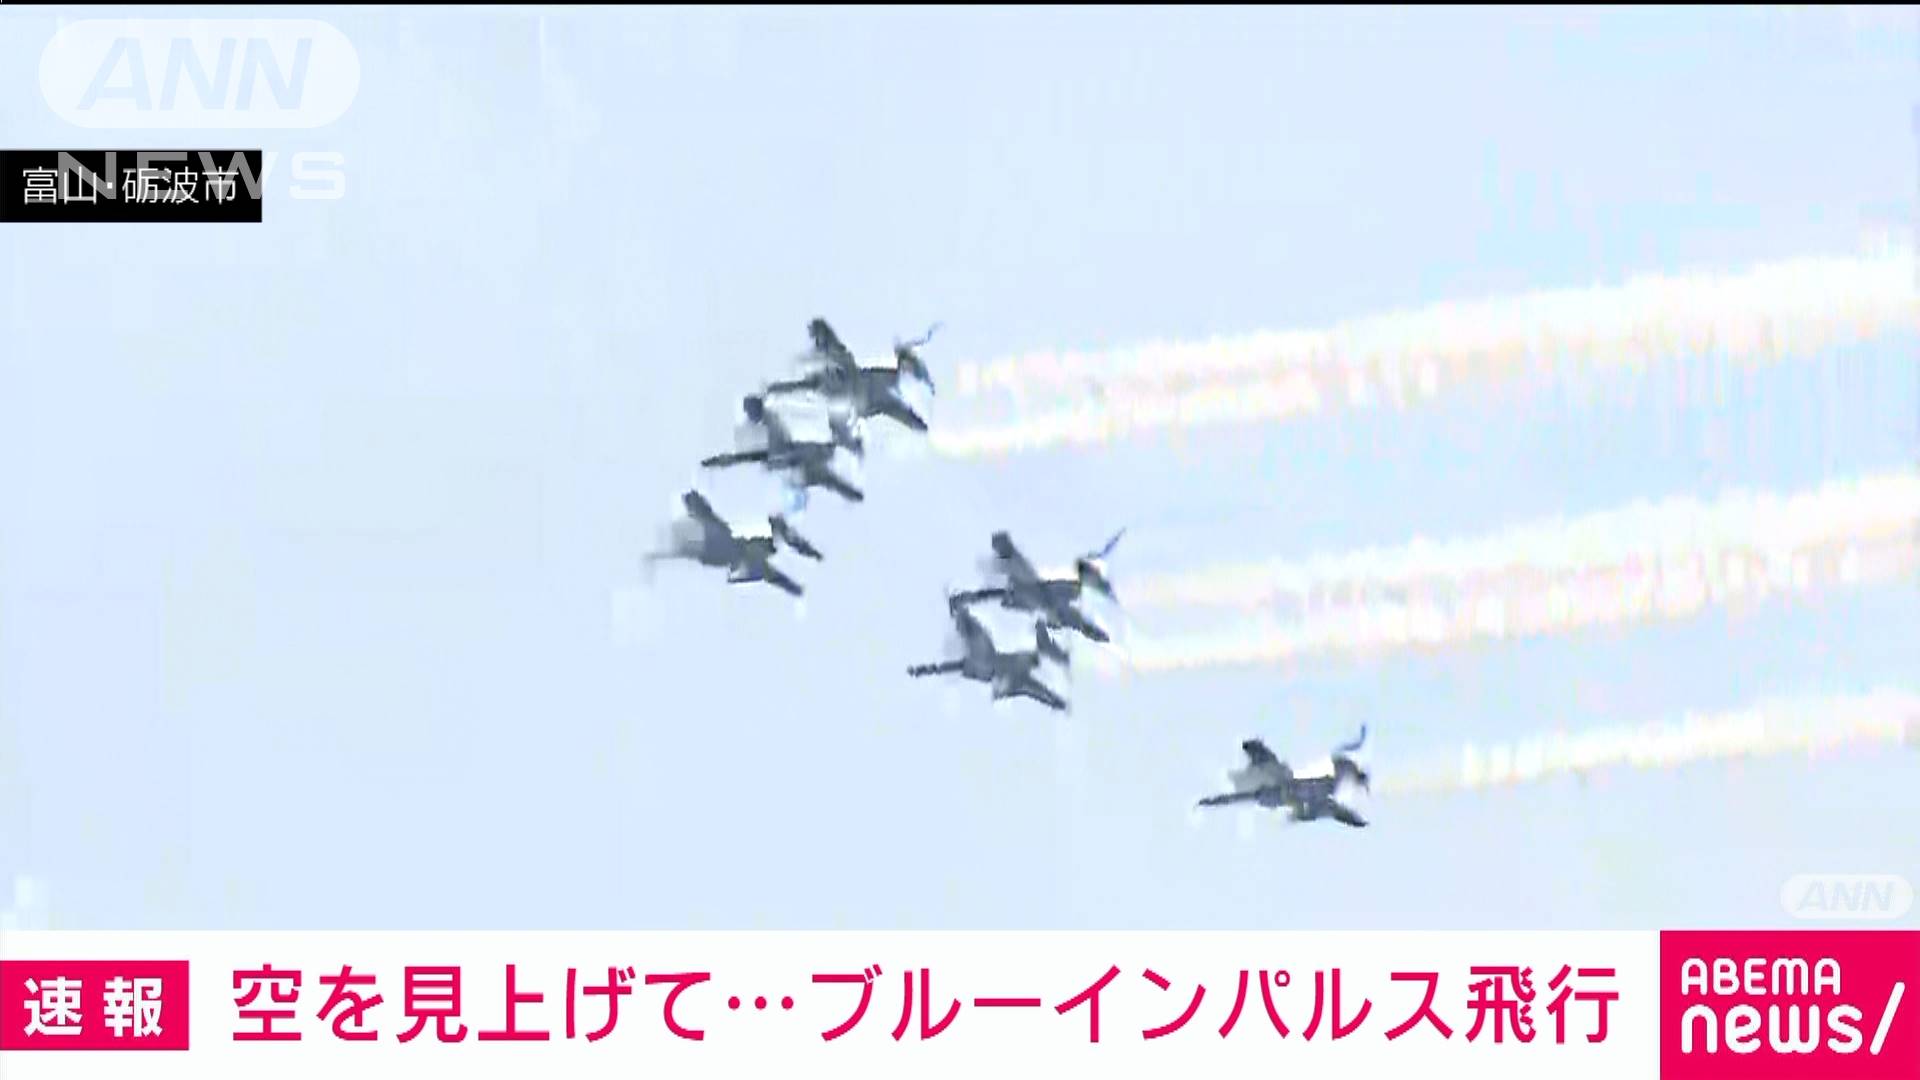 空を見上げて ブルーインパルス飛行 富山 砺波市 テレ朝news テレビ朝日のニュースサイト